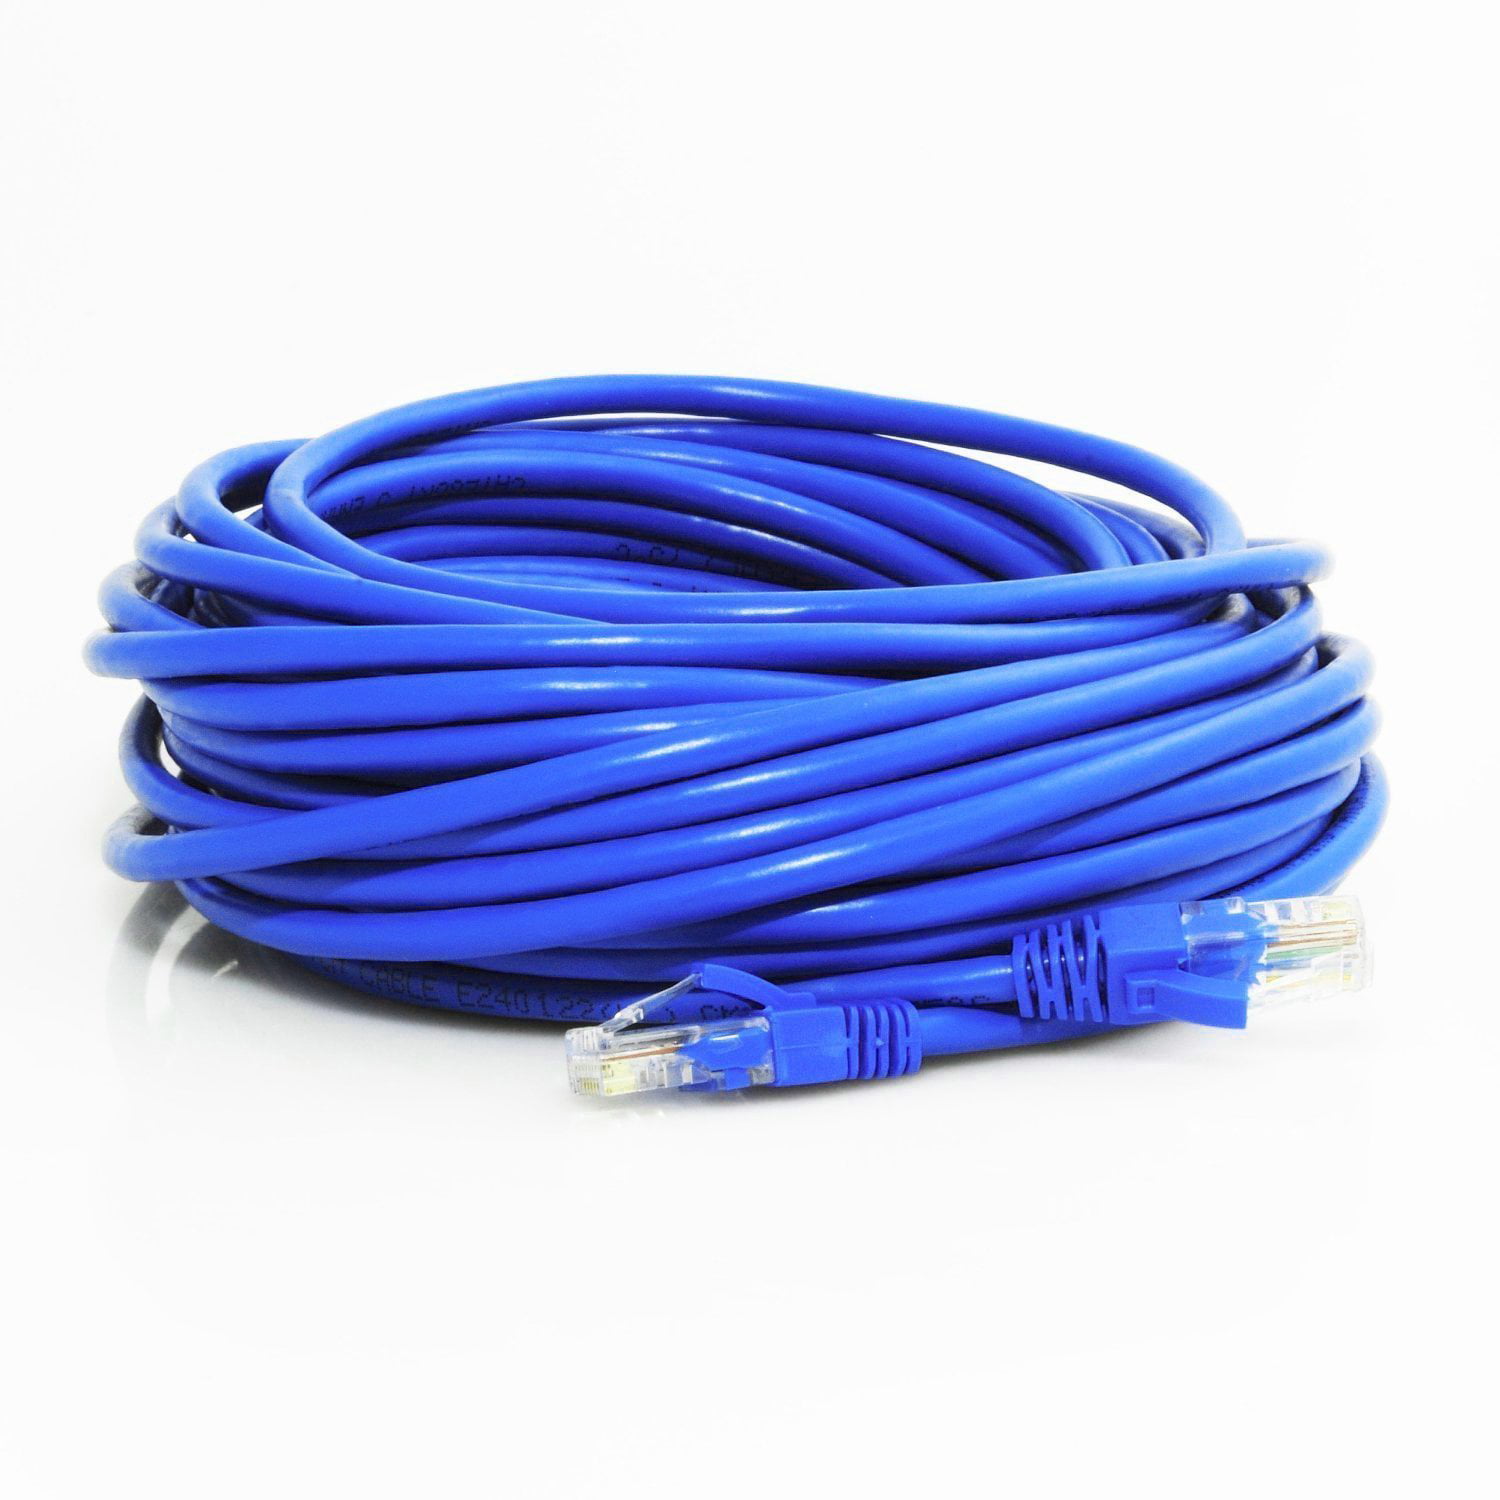 CAT 5 RJ45 Ethernet Cable Patch Cord D Shielded 30m blue KERPEN DATACOM